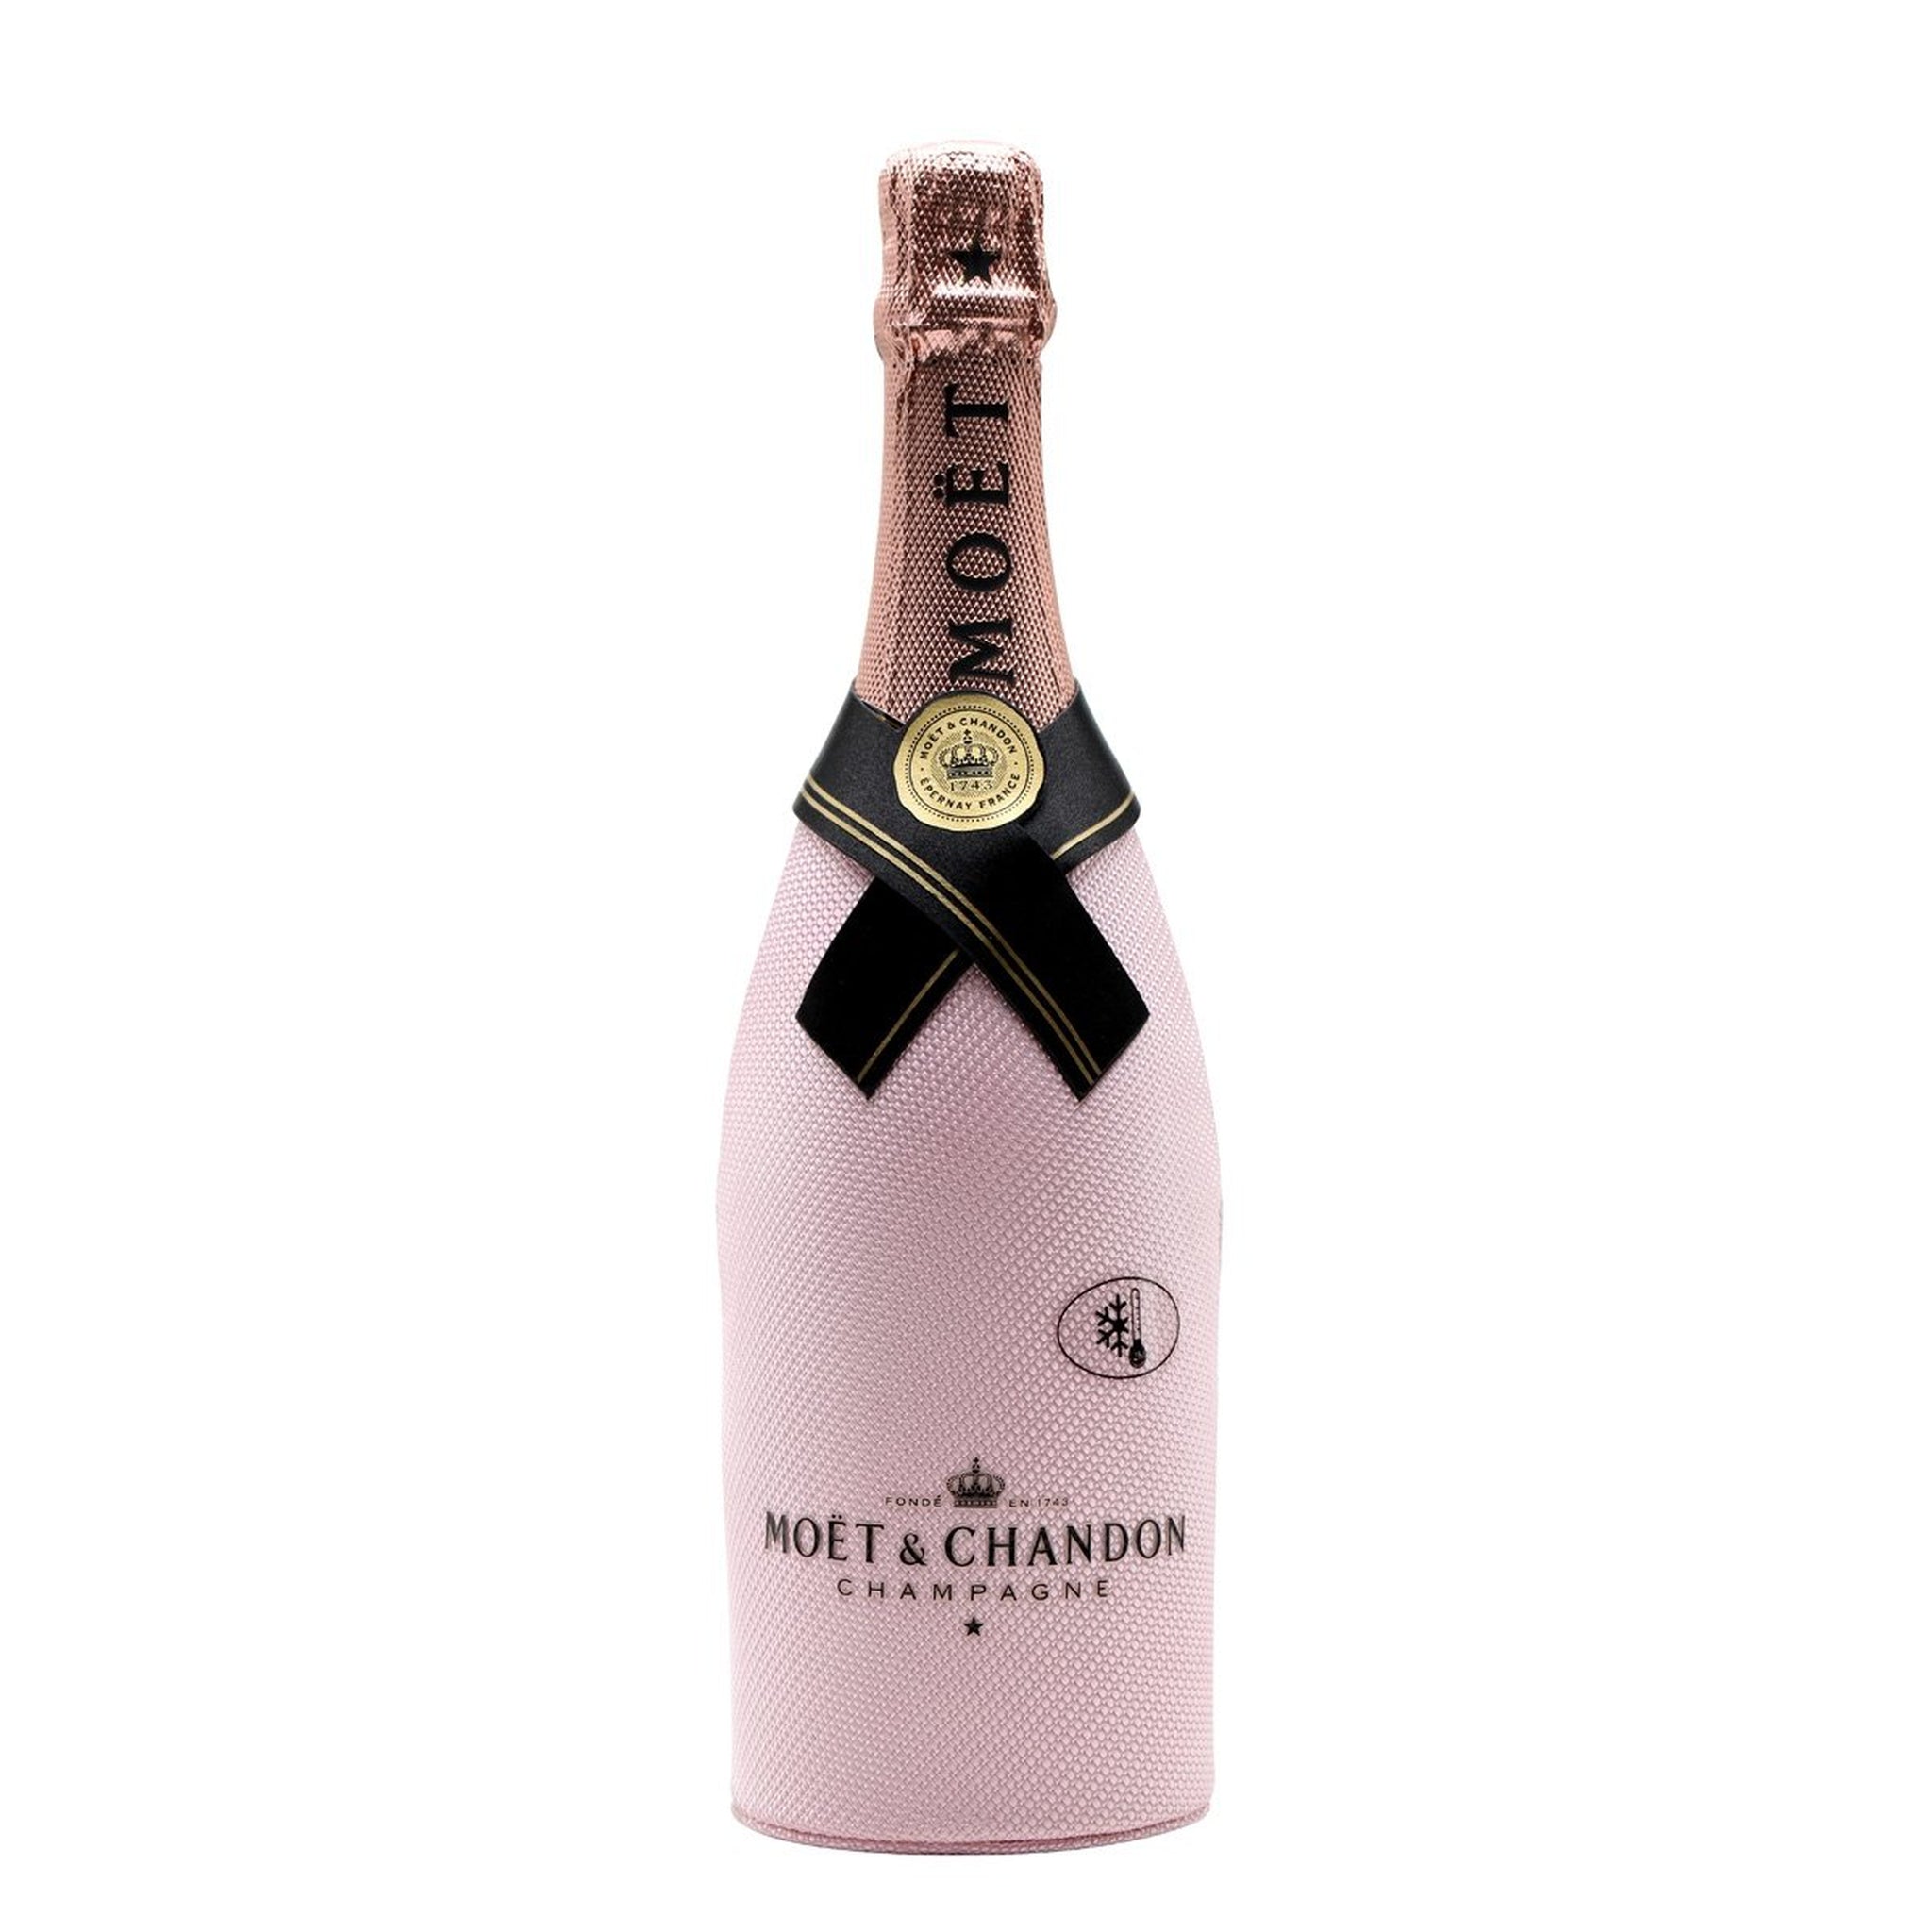 Mr. Booze.dk Moët & Chandon Champagne Rosé Imperial (Suit) (75 cl.)